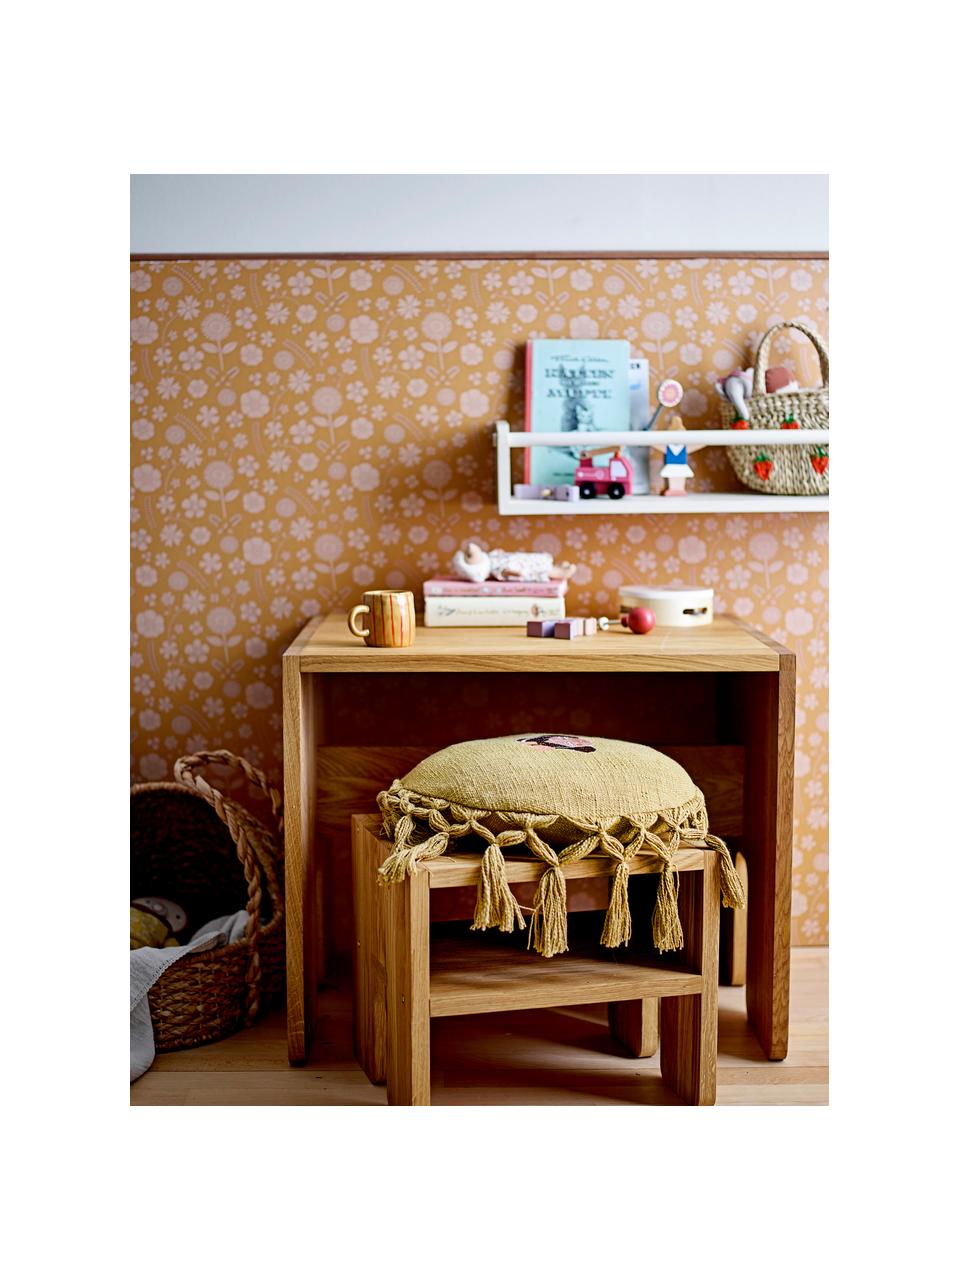 Dětská stolička z dubového dřeva Bas, Dubové dřevo, Dubové dřevo, Š 35 cm, V 30 cm